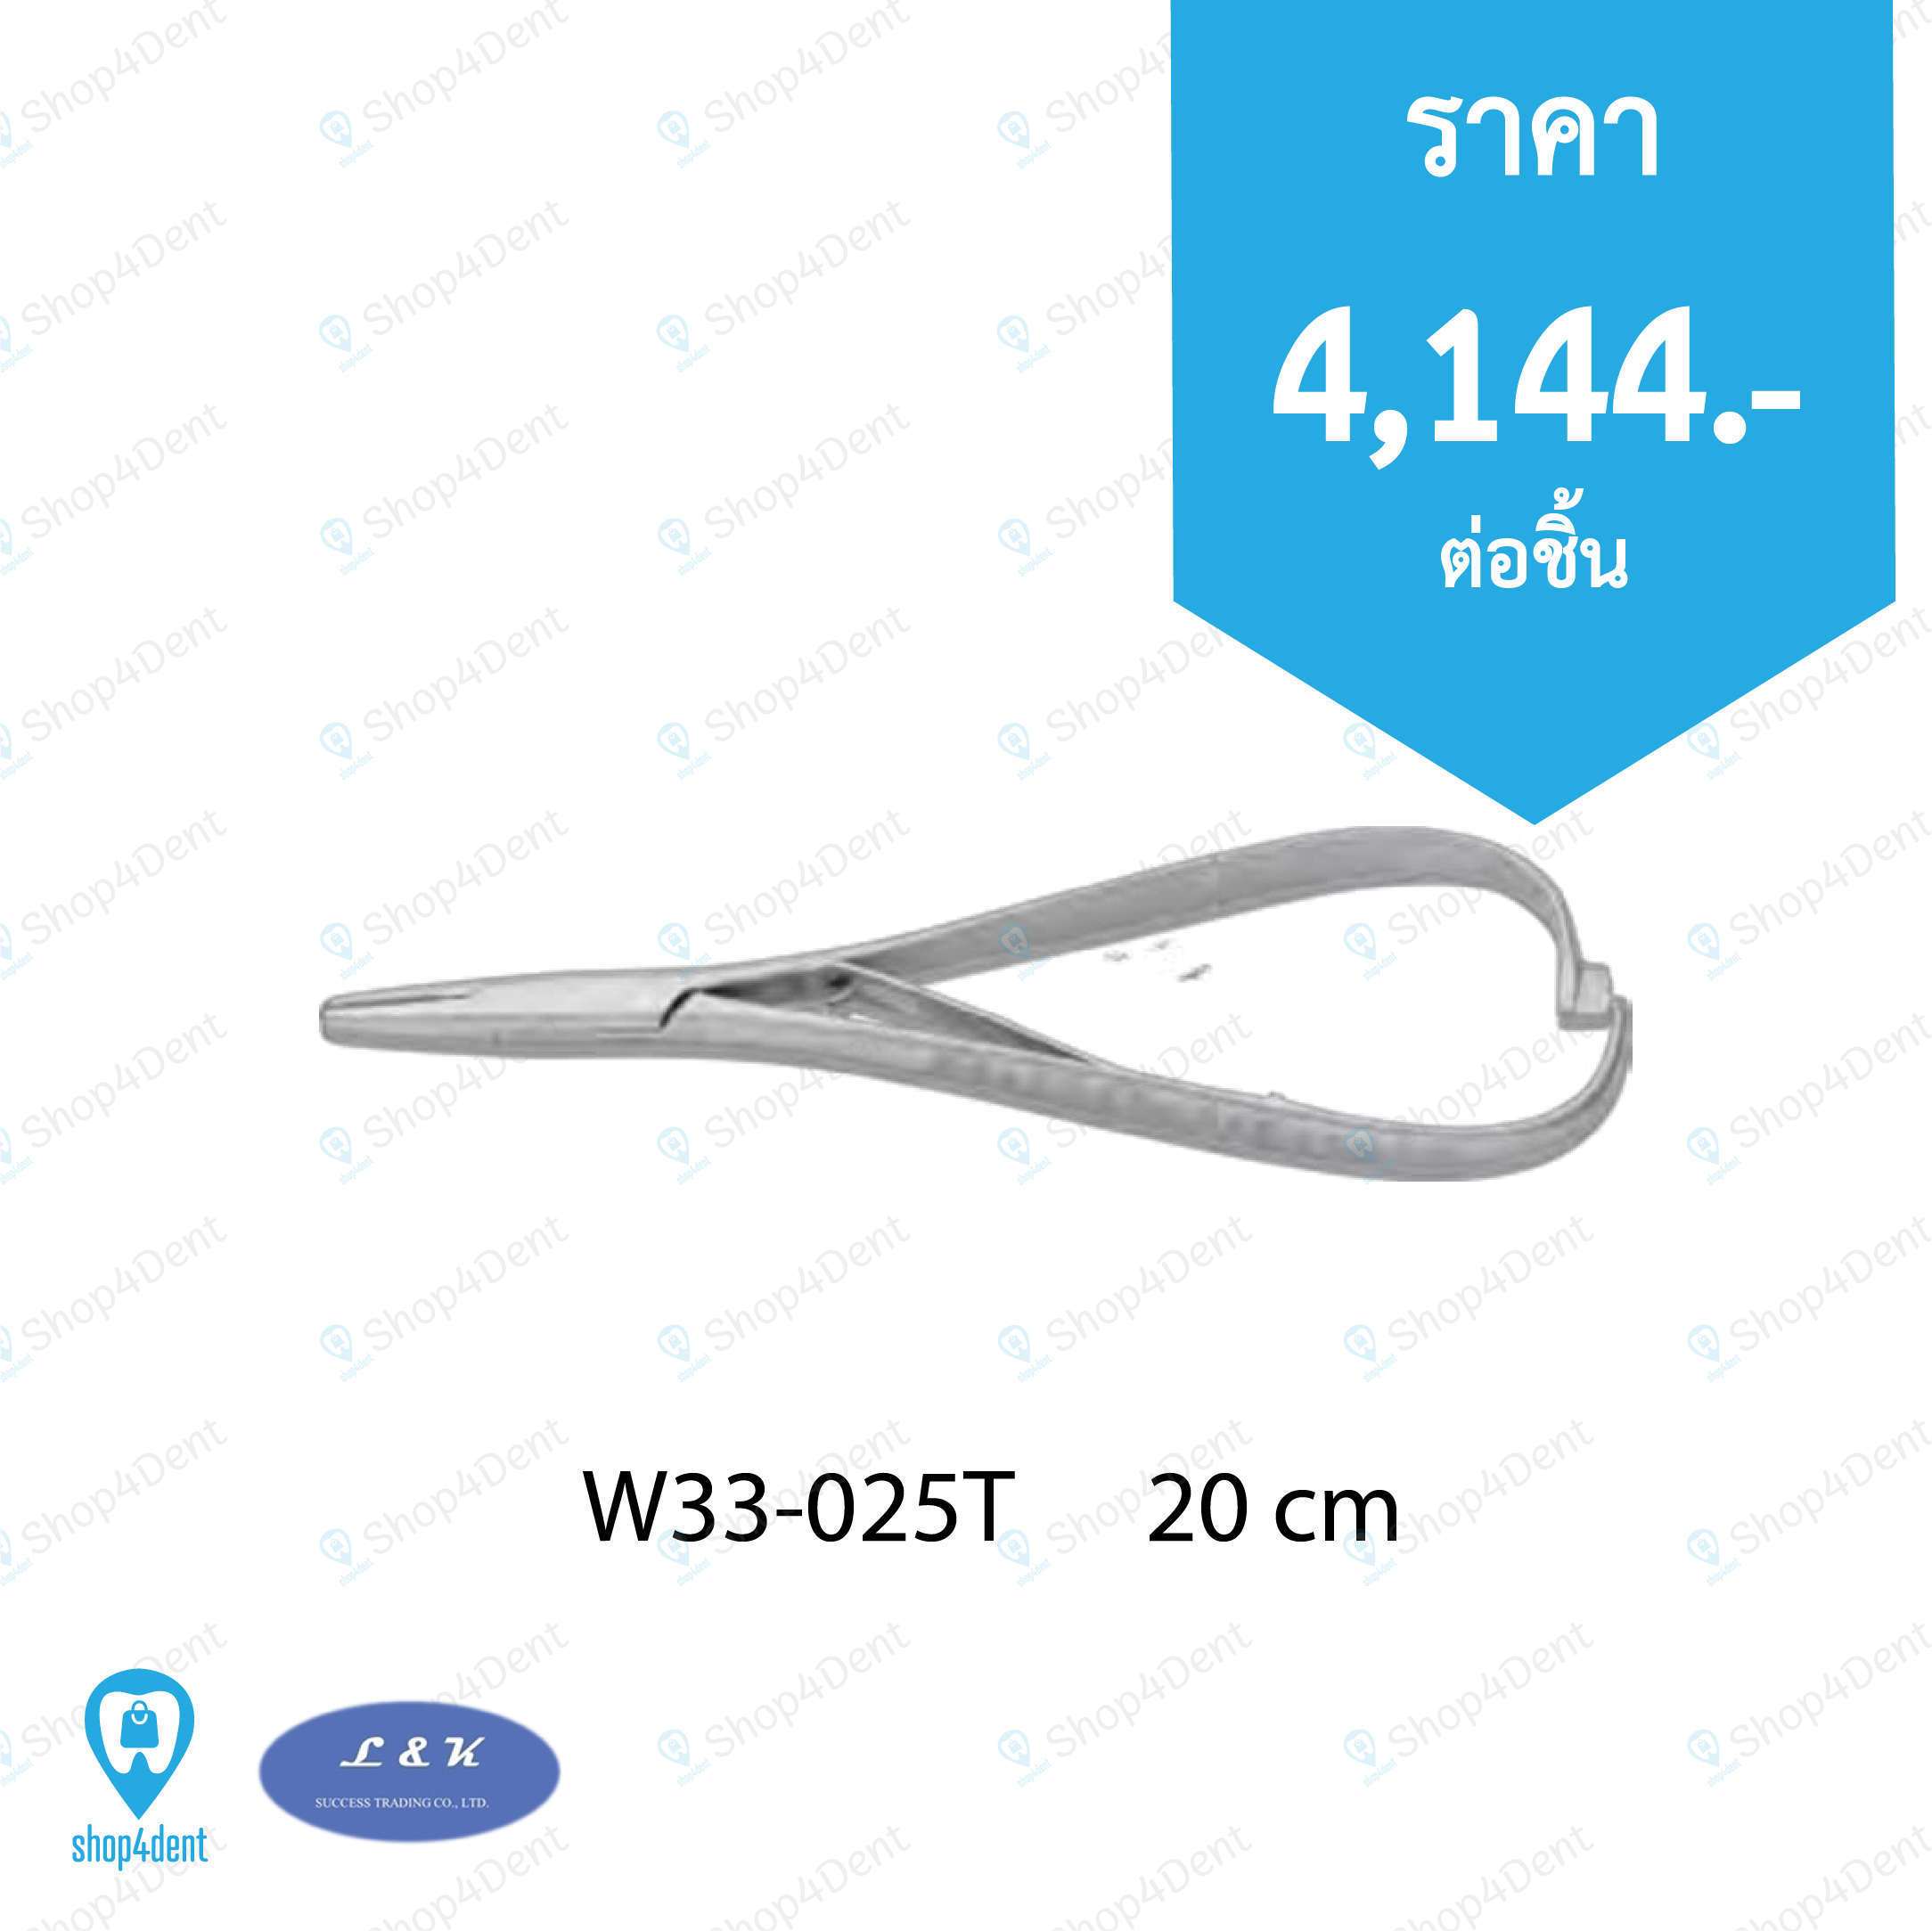 Needle Holders   W33-025T      20 cm